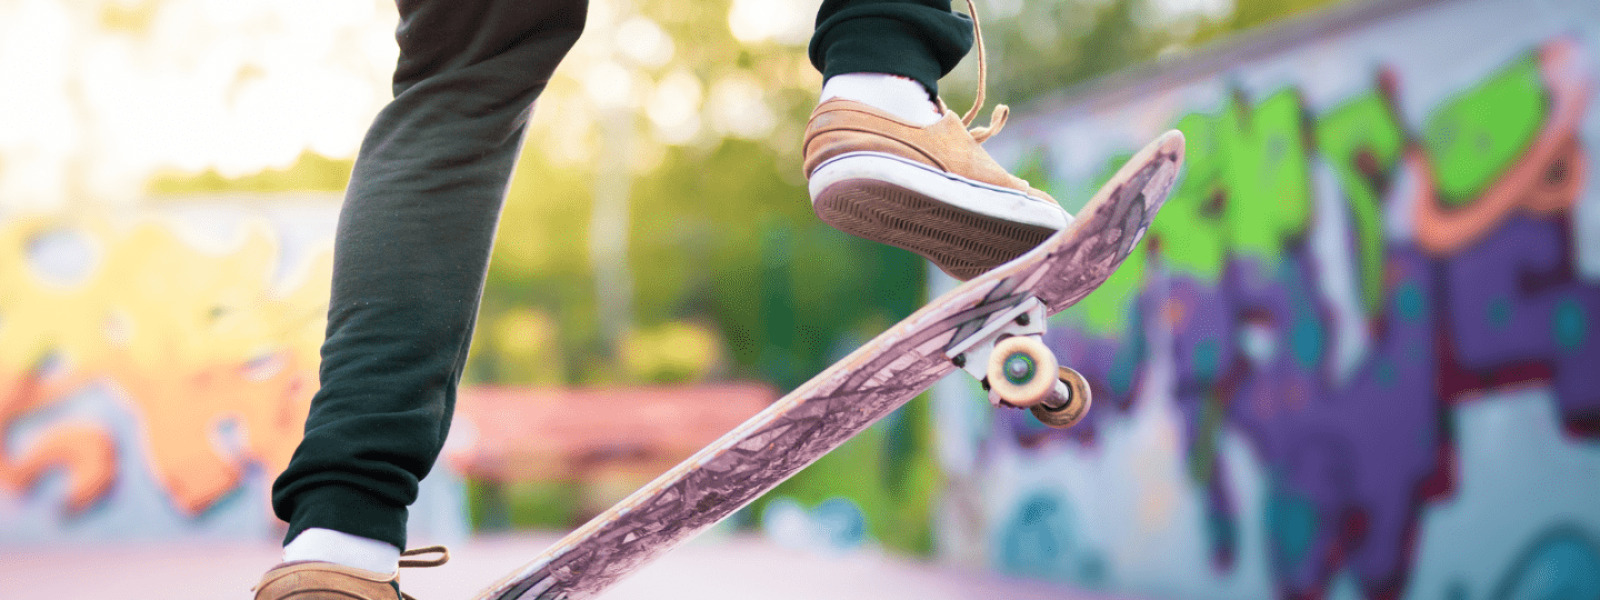 Image visuelle d'un skateboard